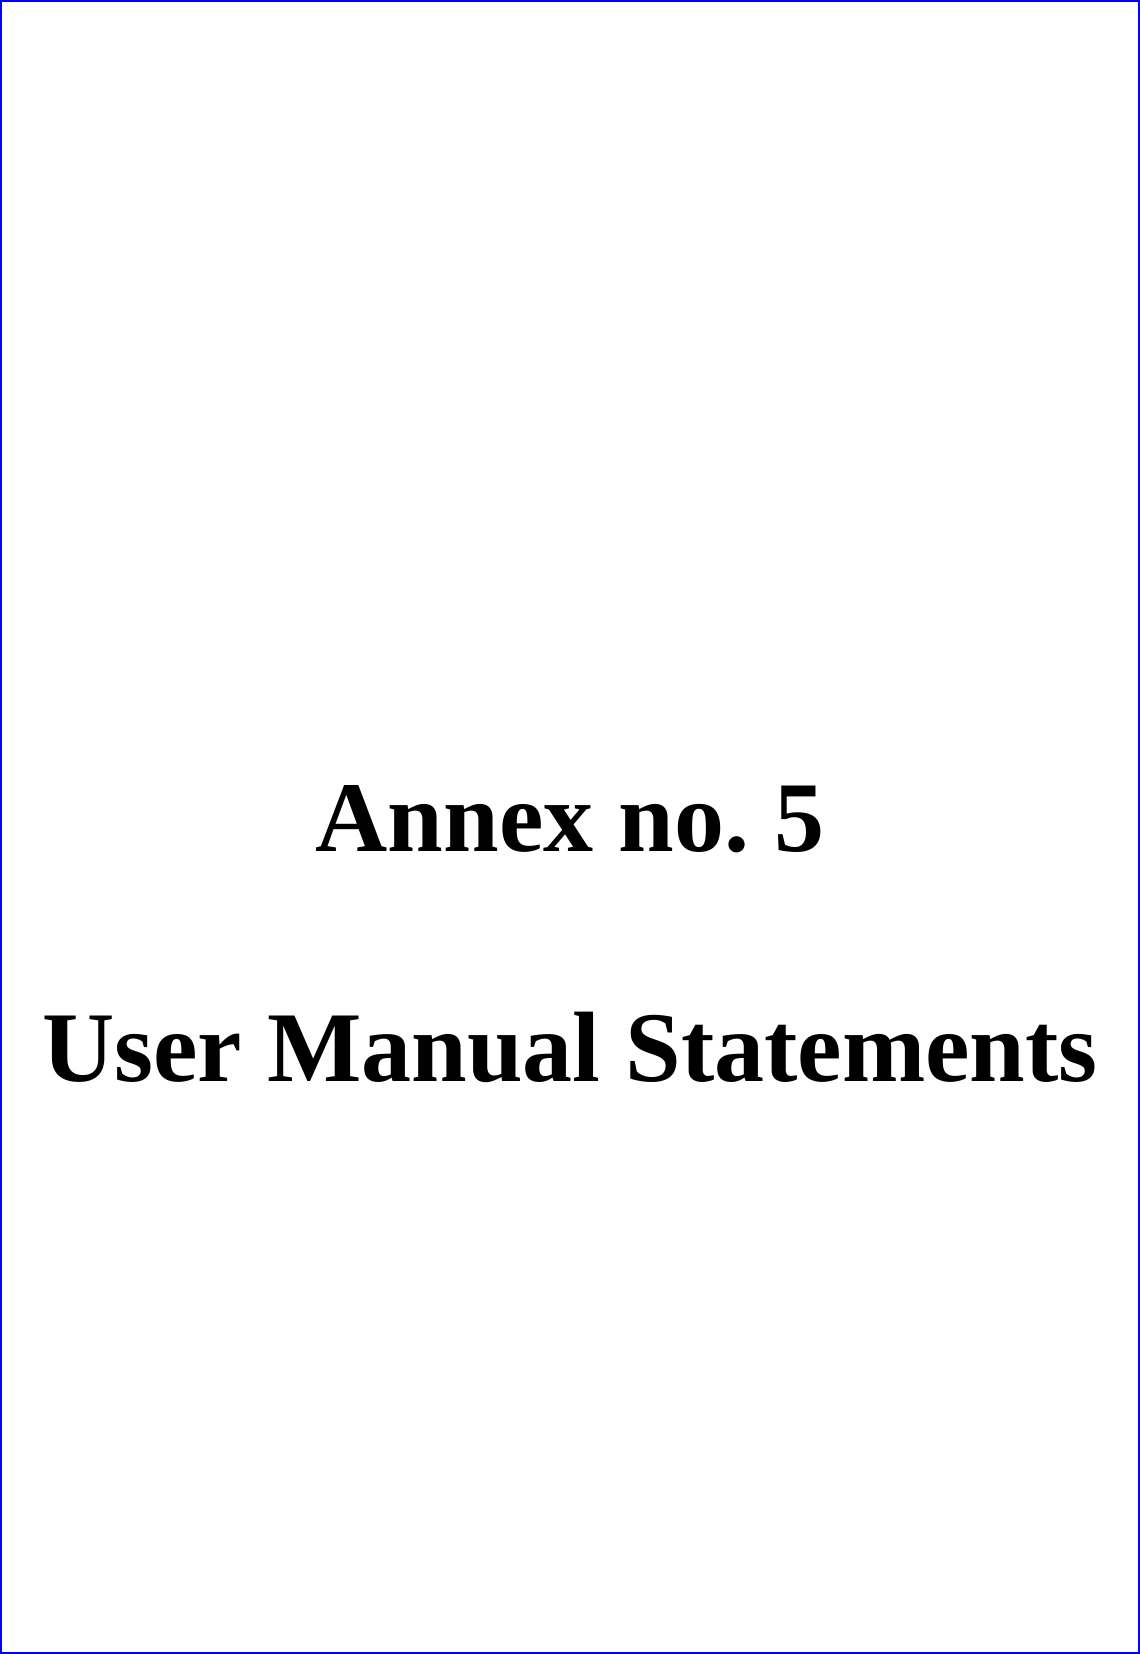       Annex no. 5  User Manual Statements 